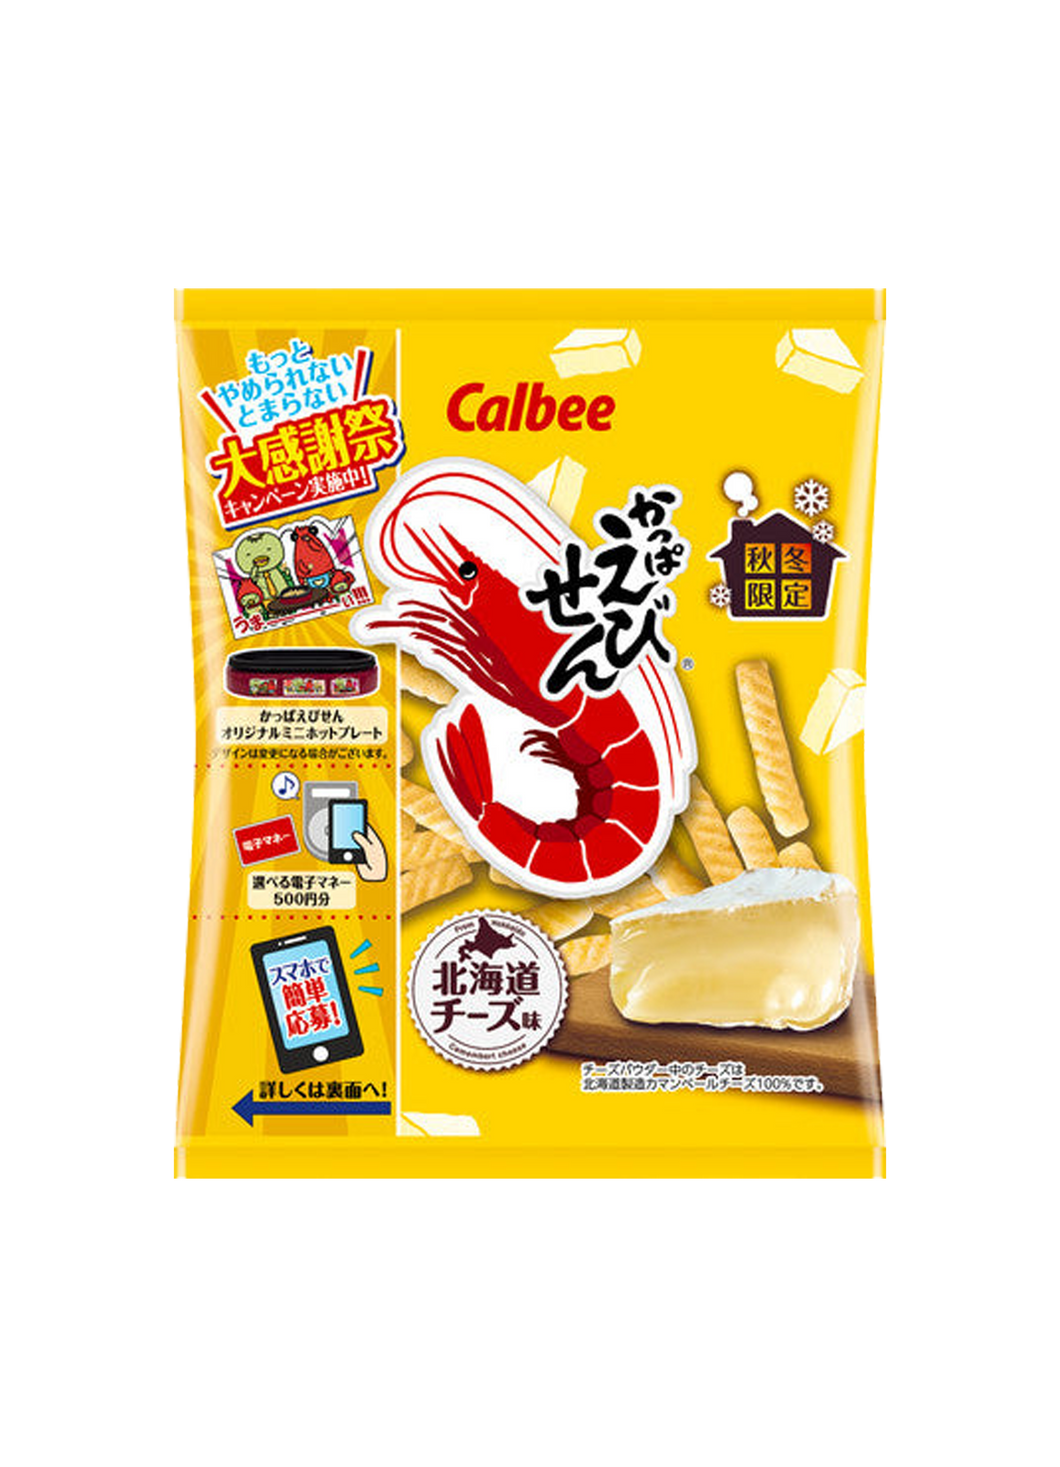 Calbee Wheat Cracker Kappa Ebisen Hokkaido Cheese 70g